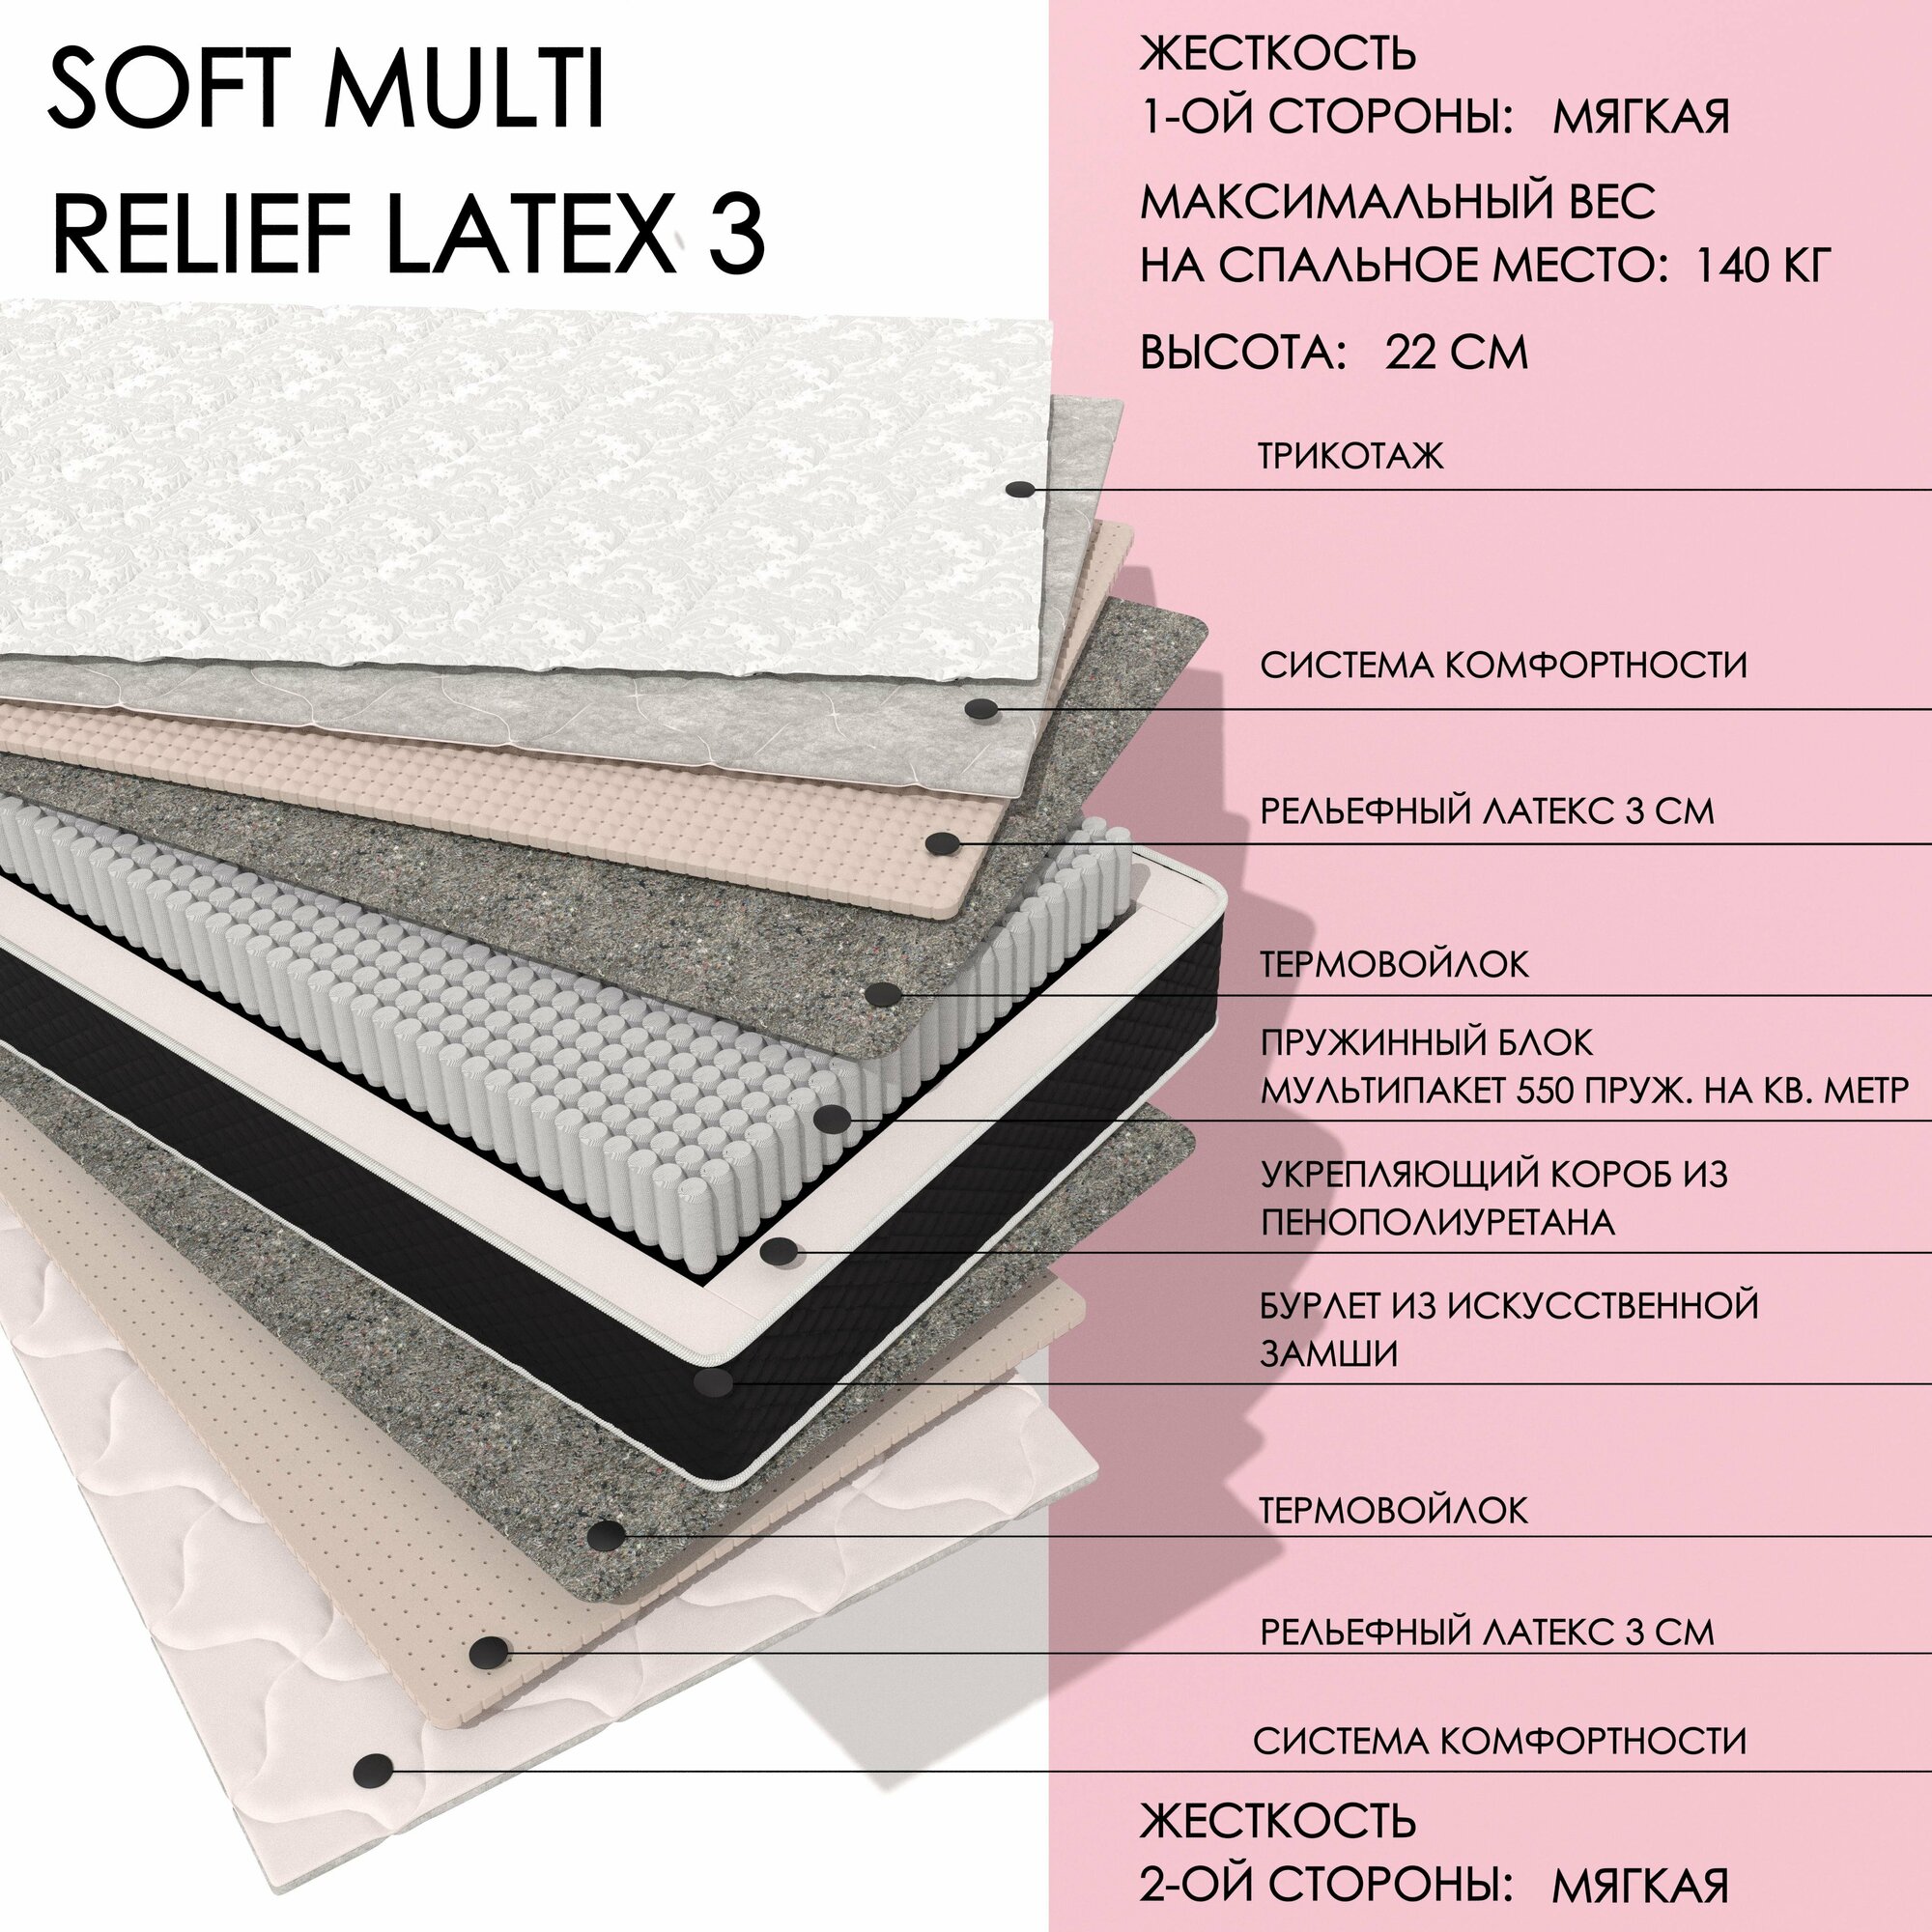 Двухсторонний матрас XMATRAS Soft MULTI Relief 3 размер 180х200, высотой 22 см, жесткость низкая